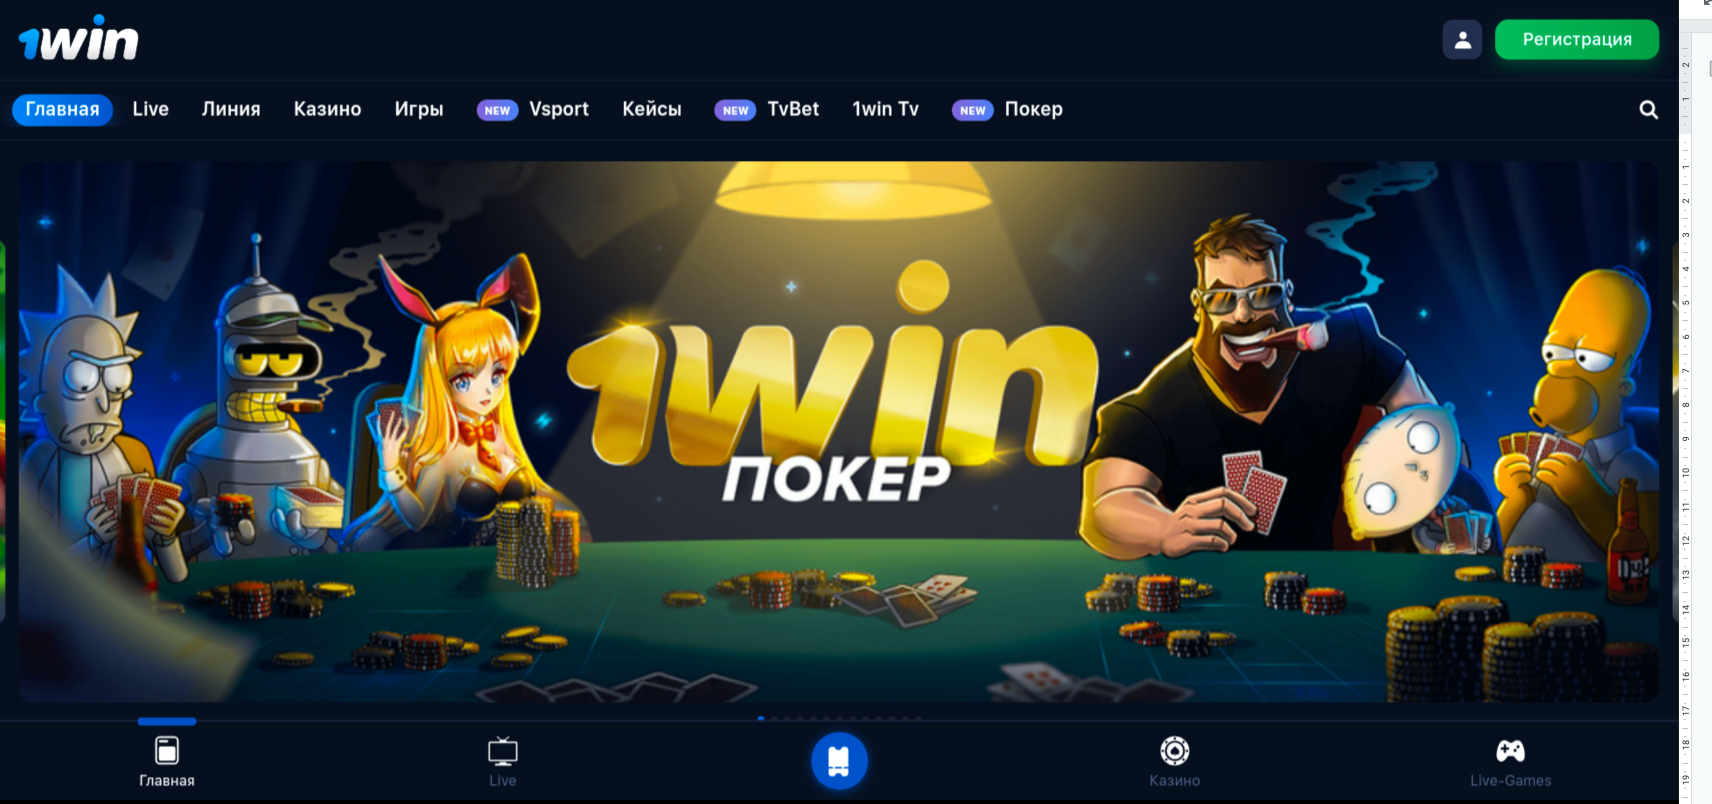 1win casino bonus code